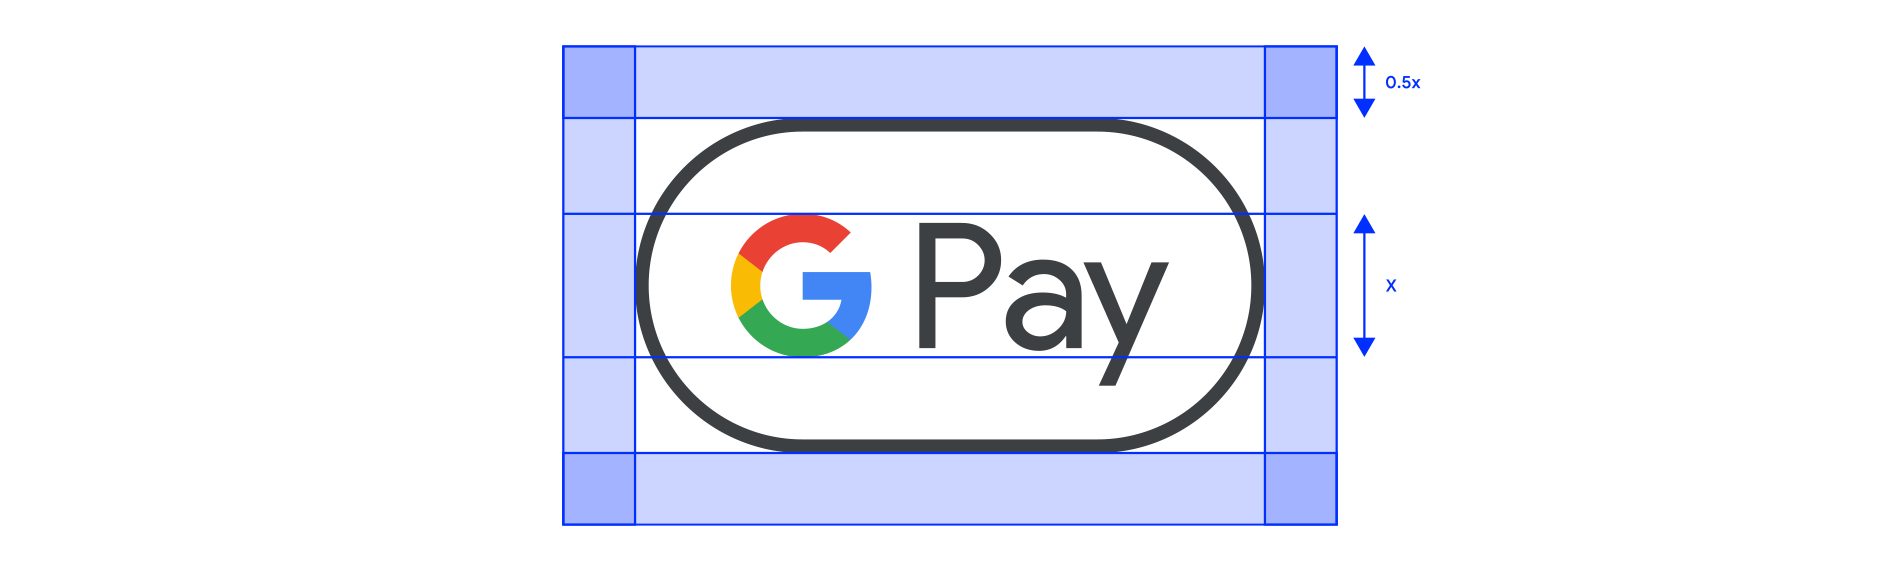 Google Pay 標誌周圍留空範例